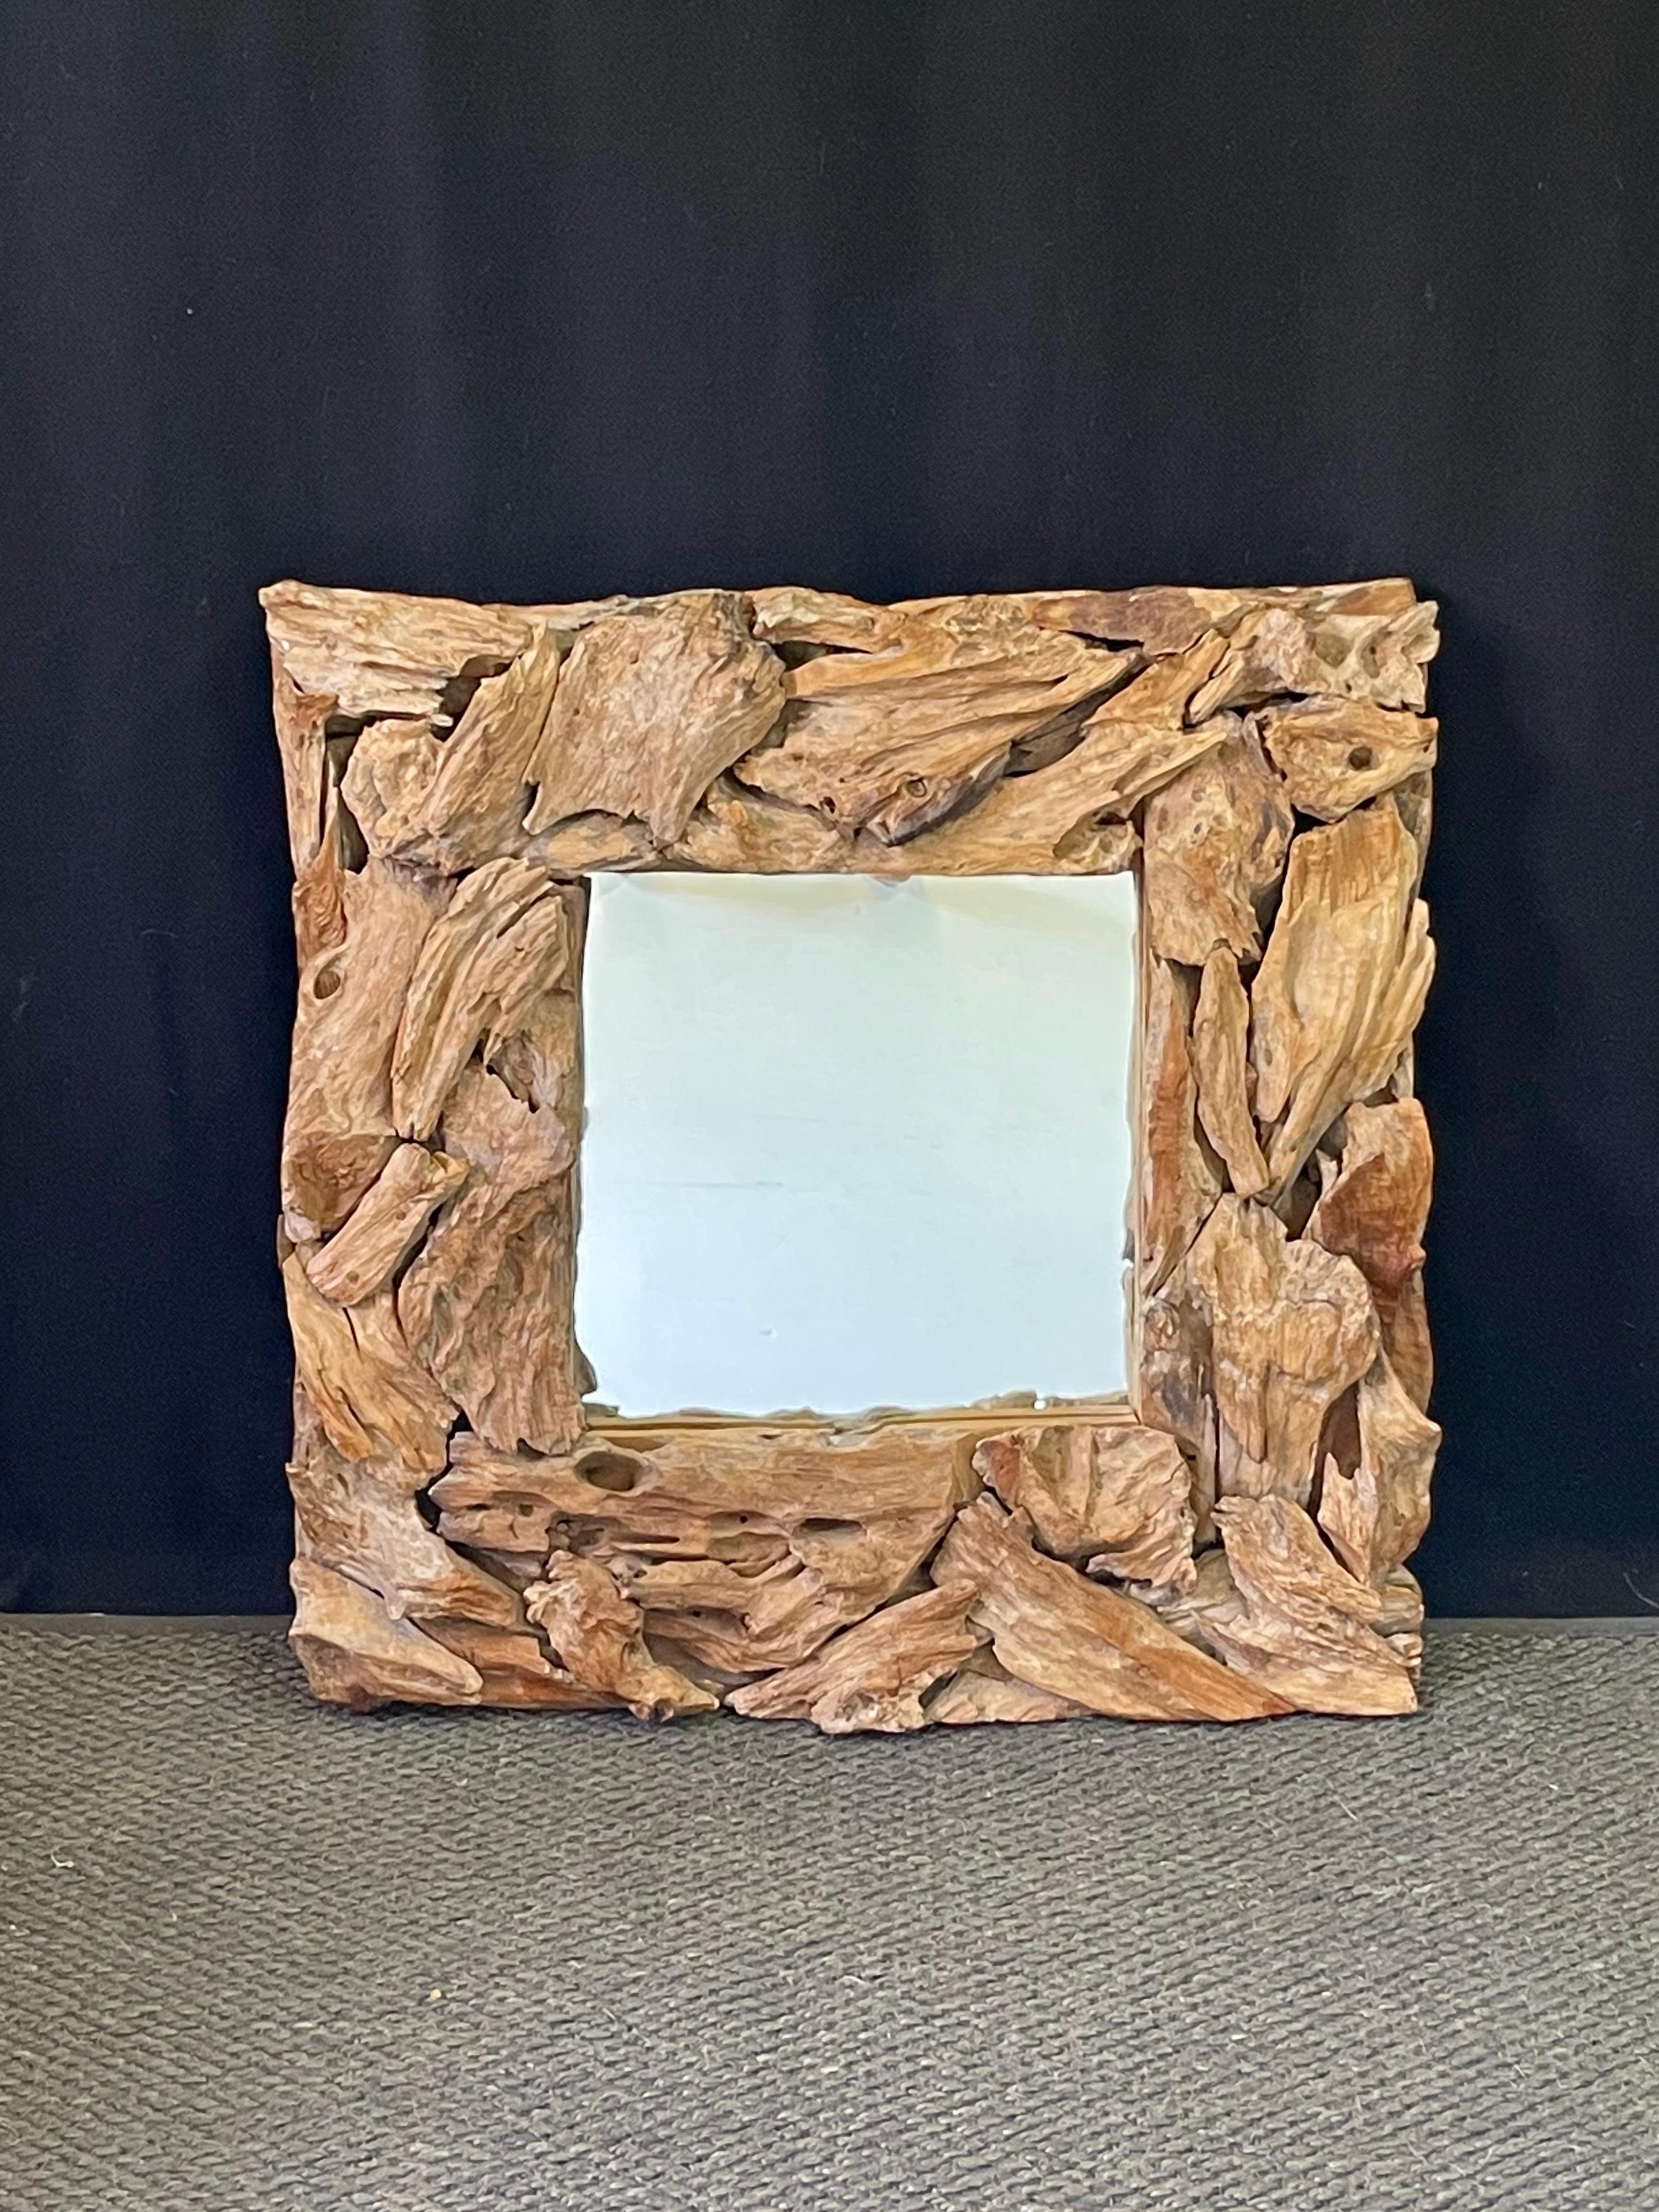 Cadre d'assemblage en bois flotté organique moderne du 20e siècle contenant un miroir. Des morceaux individuels de bois flotté ont été façonnés à la main pour former un cadre texturé, rustique et original, maintenu par un support en fer. 

Le